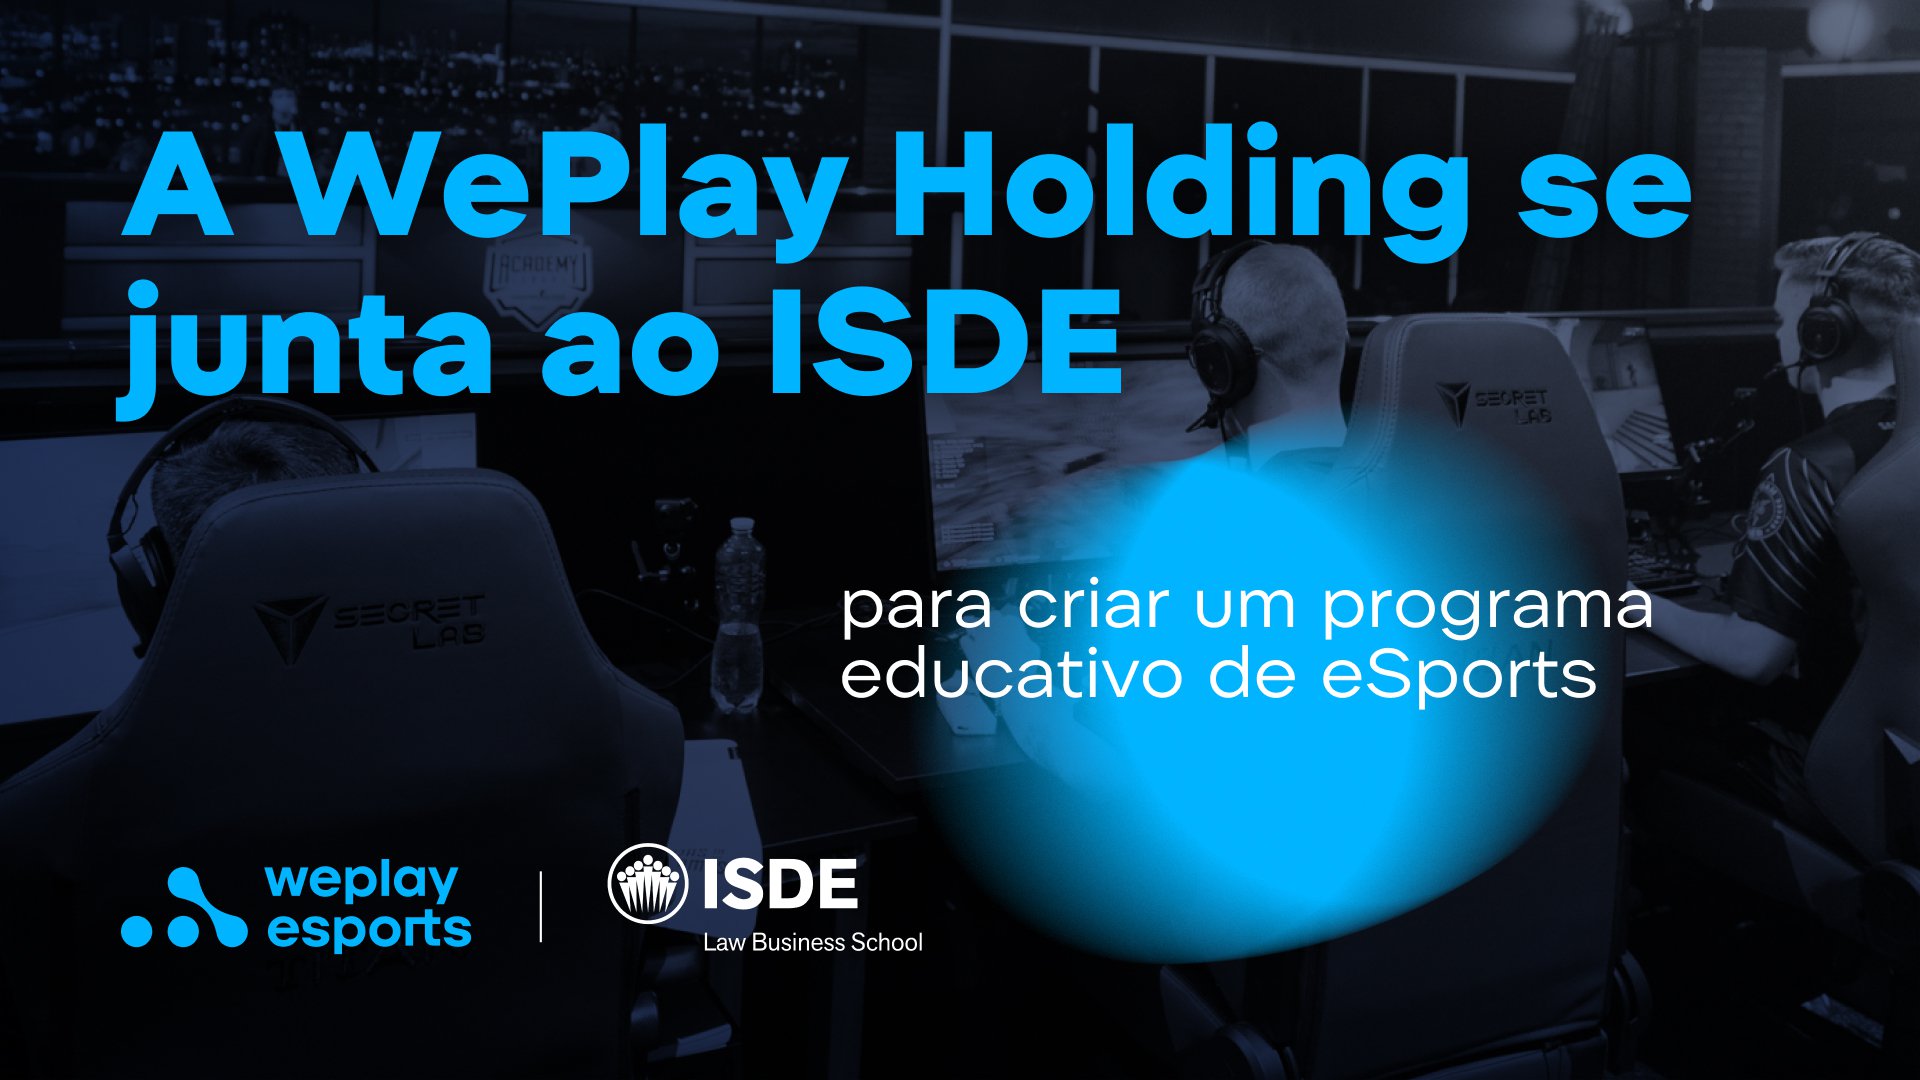 A WePlay Holding se junta ao ISDE para criar um programa educativo de eSports